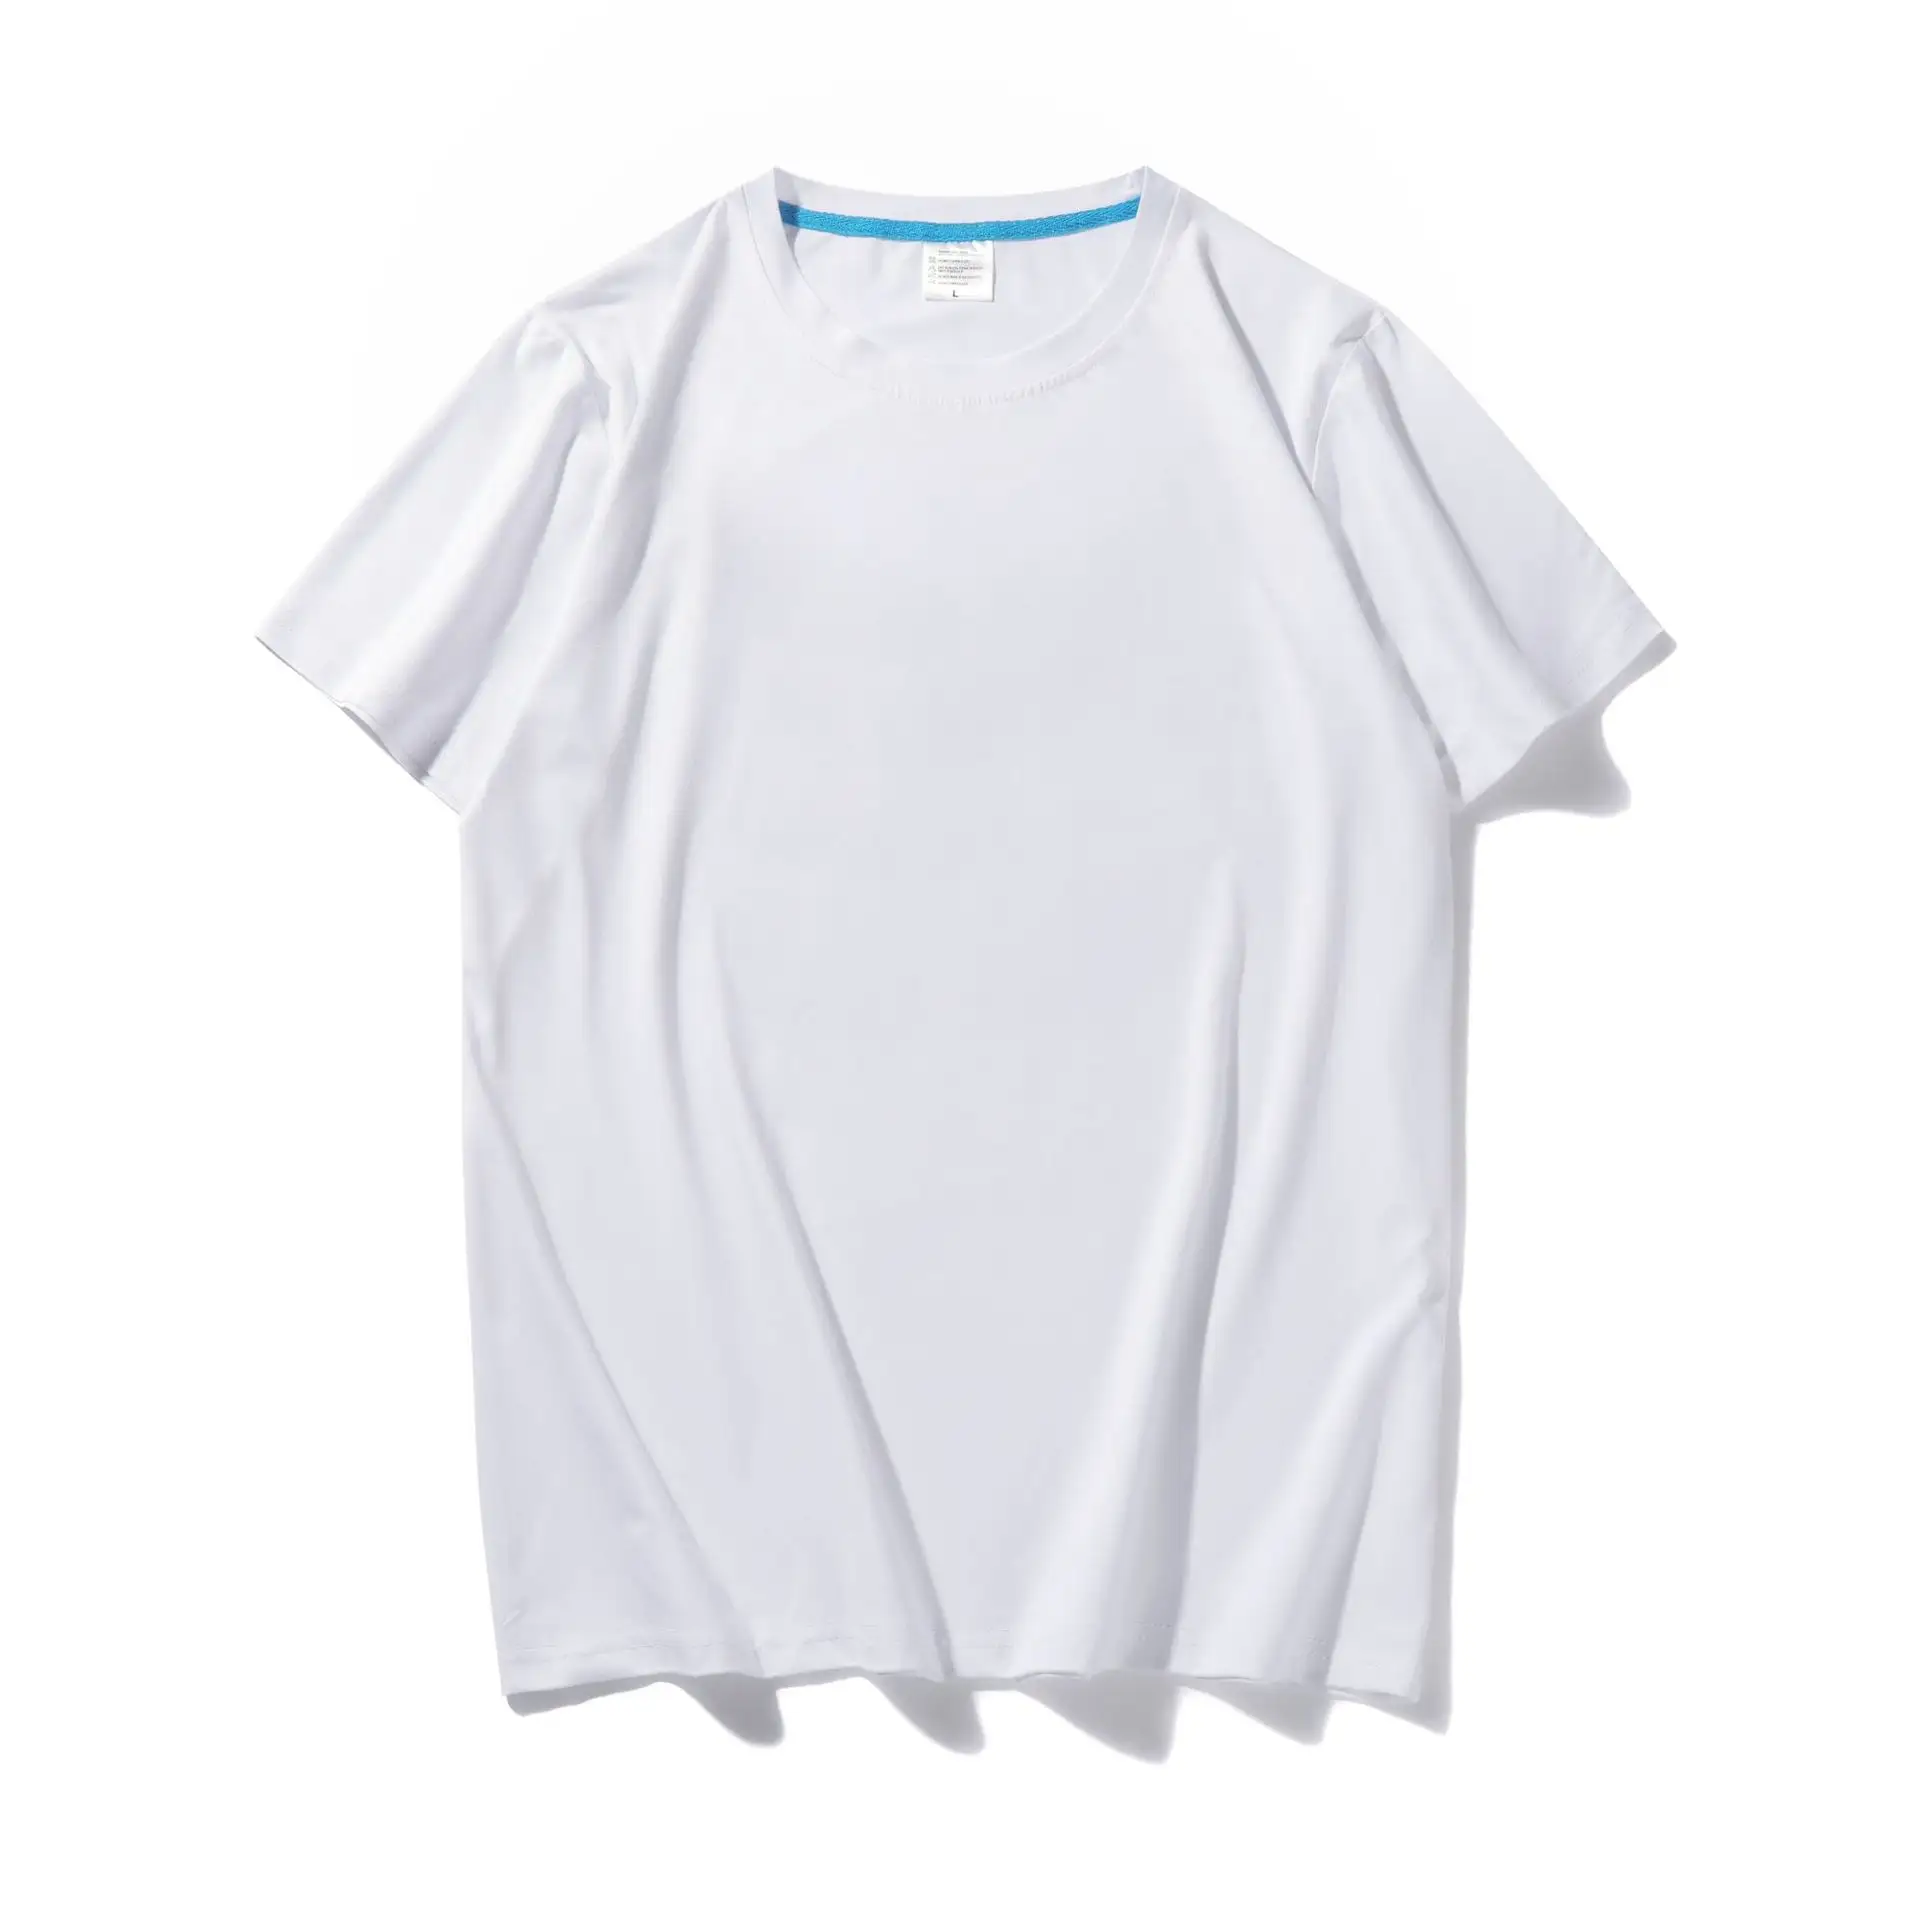 Летняя коллекция, белая Модальная футболка из молочного шелка, футболка с коротким рукавом, командная форма с принтом, мягкая ткань, оптовая продажа